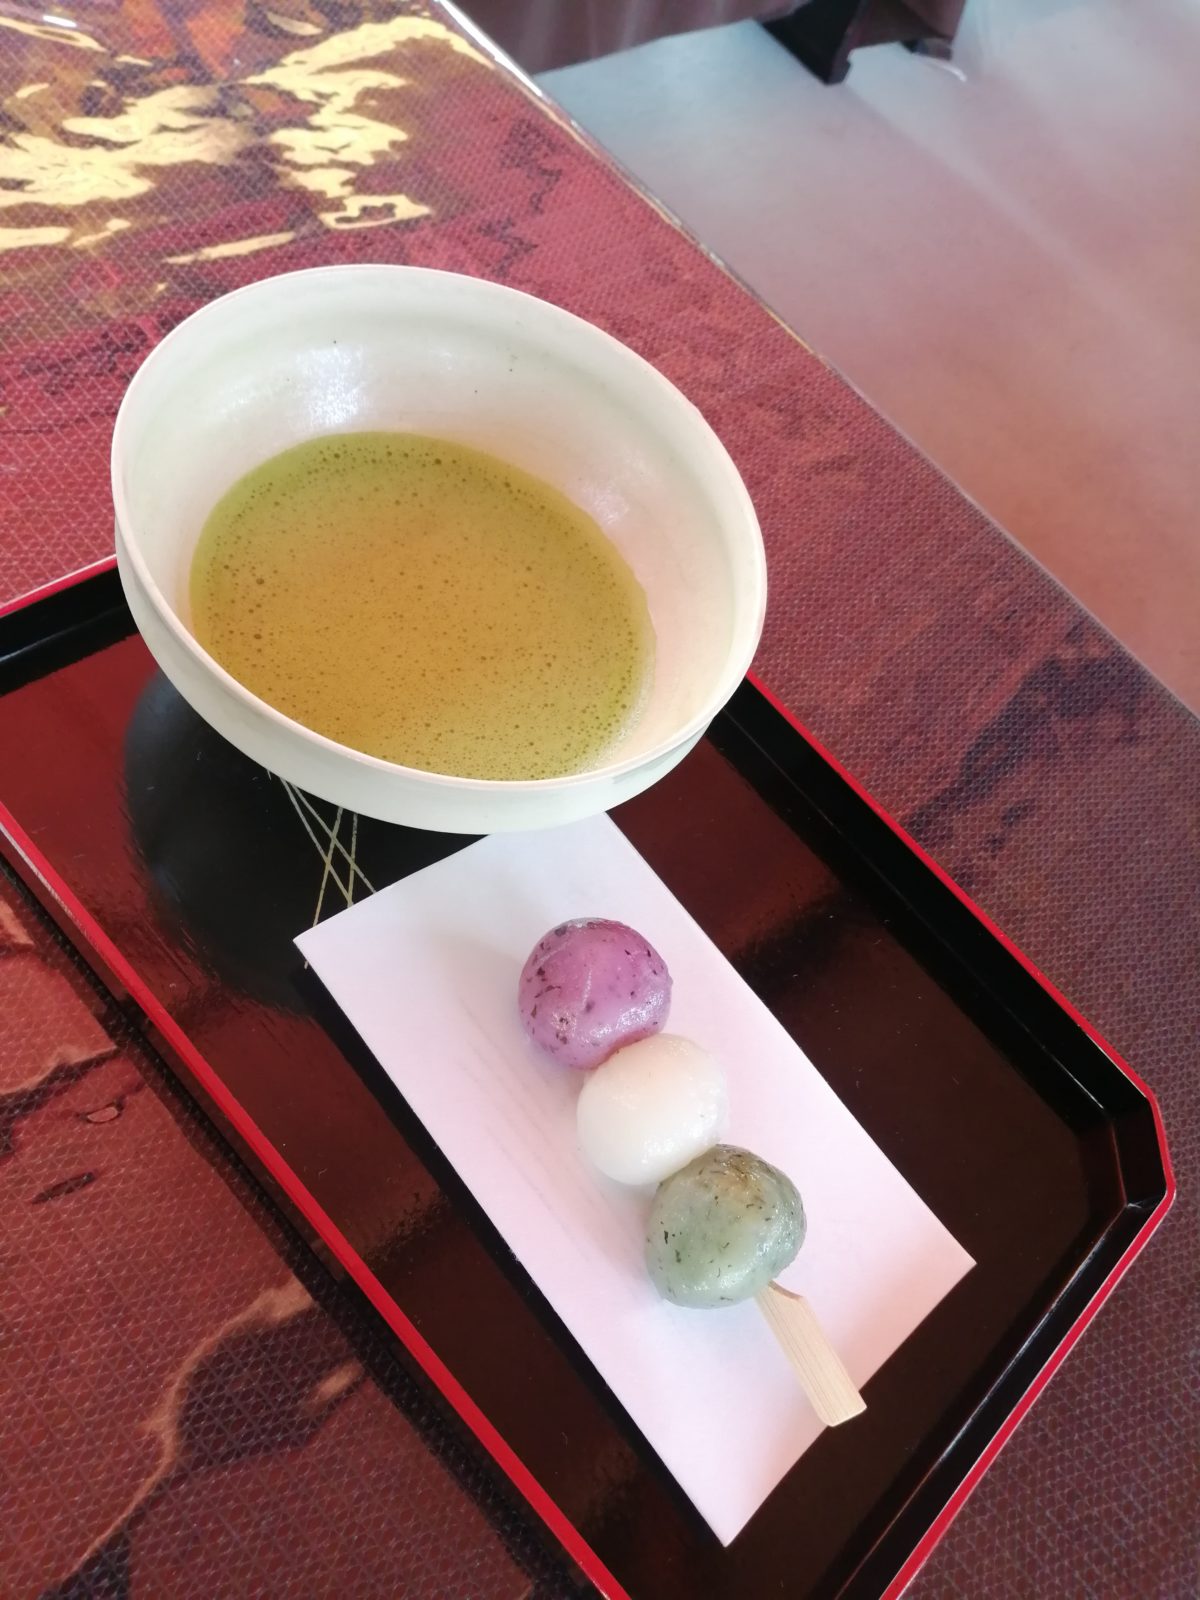 名古屋・白鳥庭園 観桜会 4月1日 山桜の席のお茶とお菓子の花見団子の画像